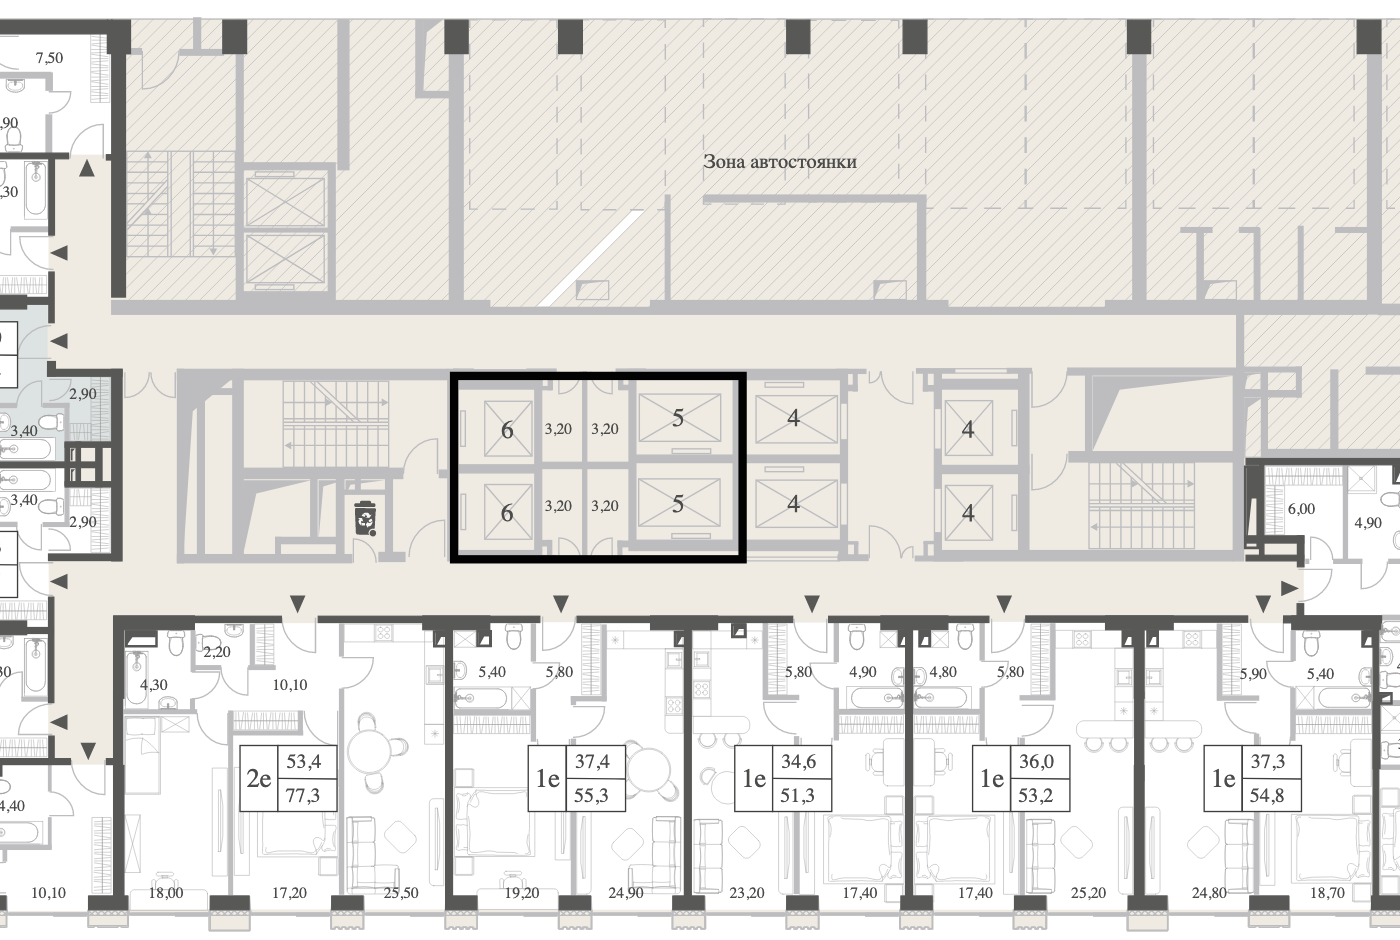 Планировка квартиры-студии Full House на общем плане